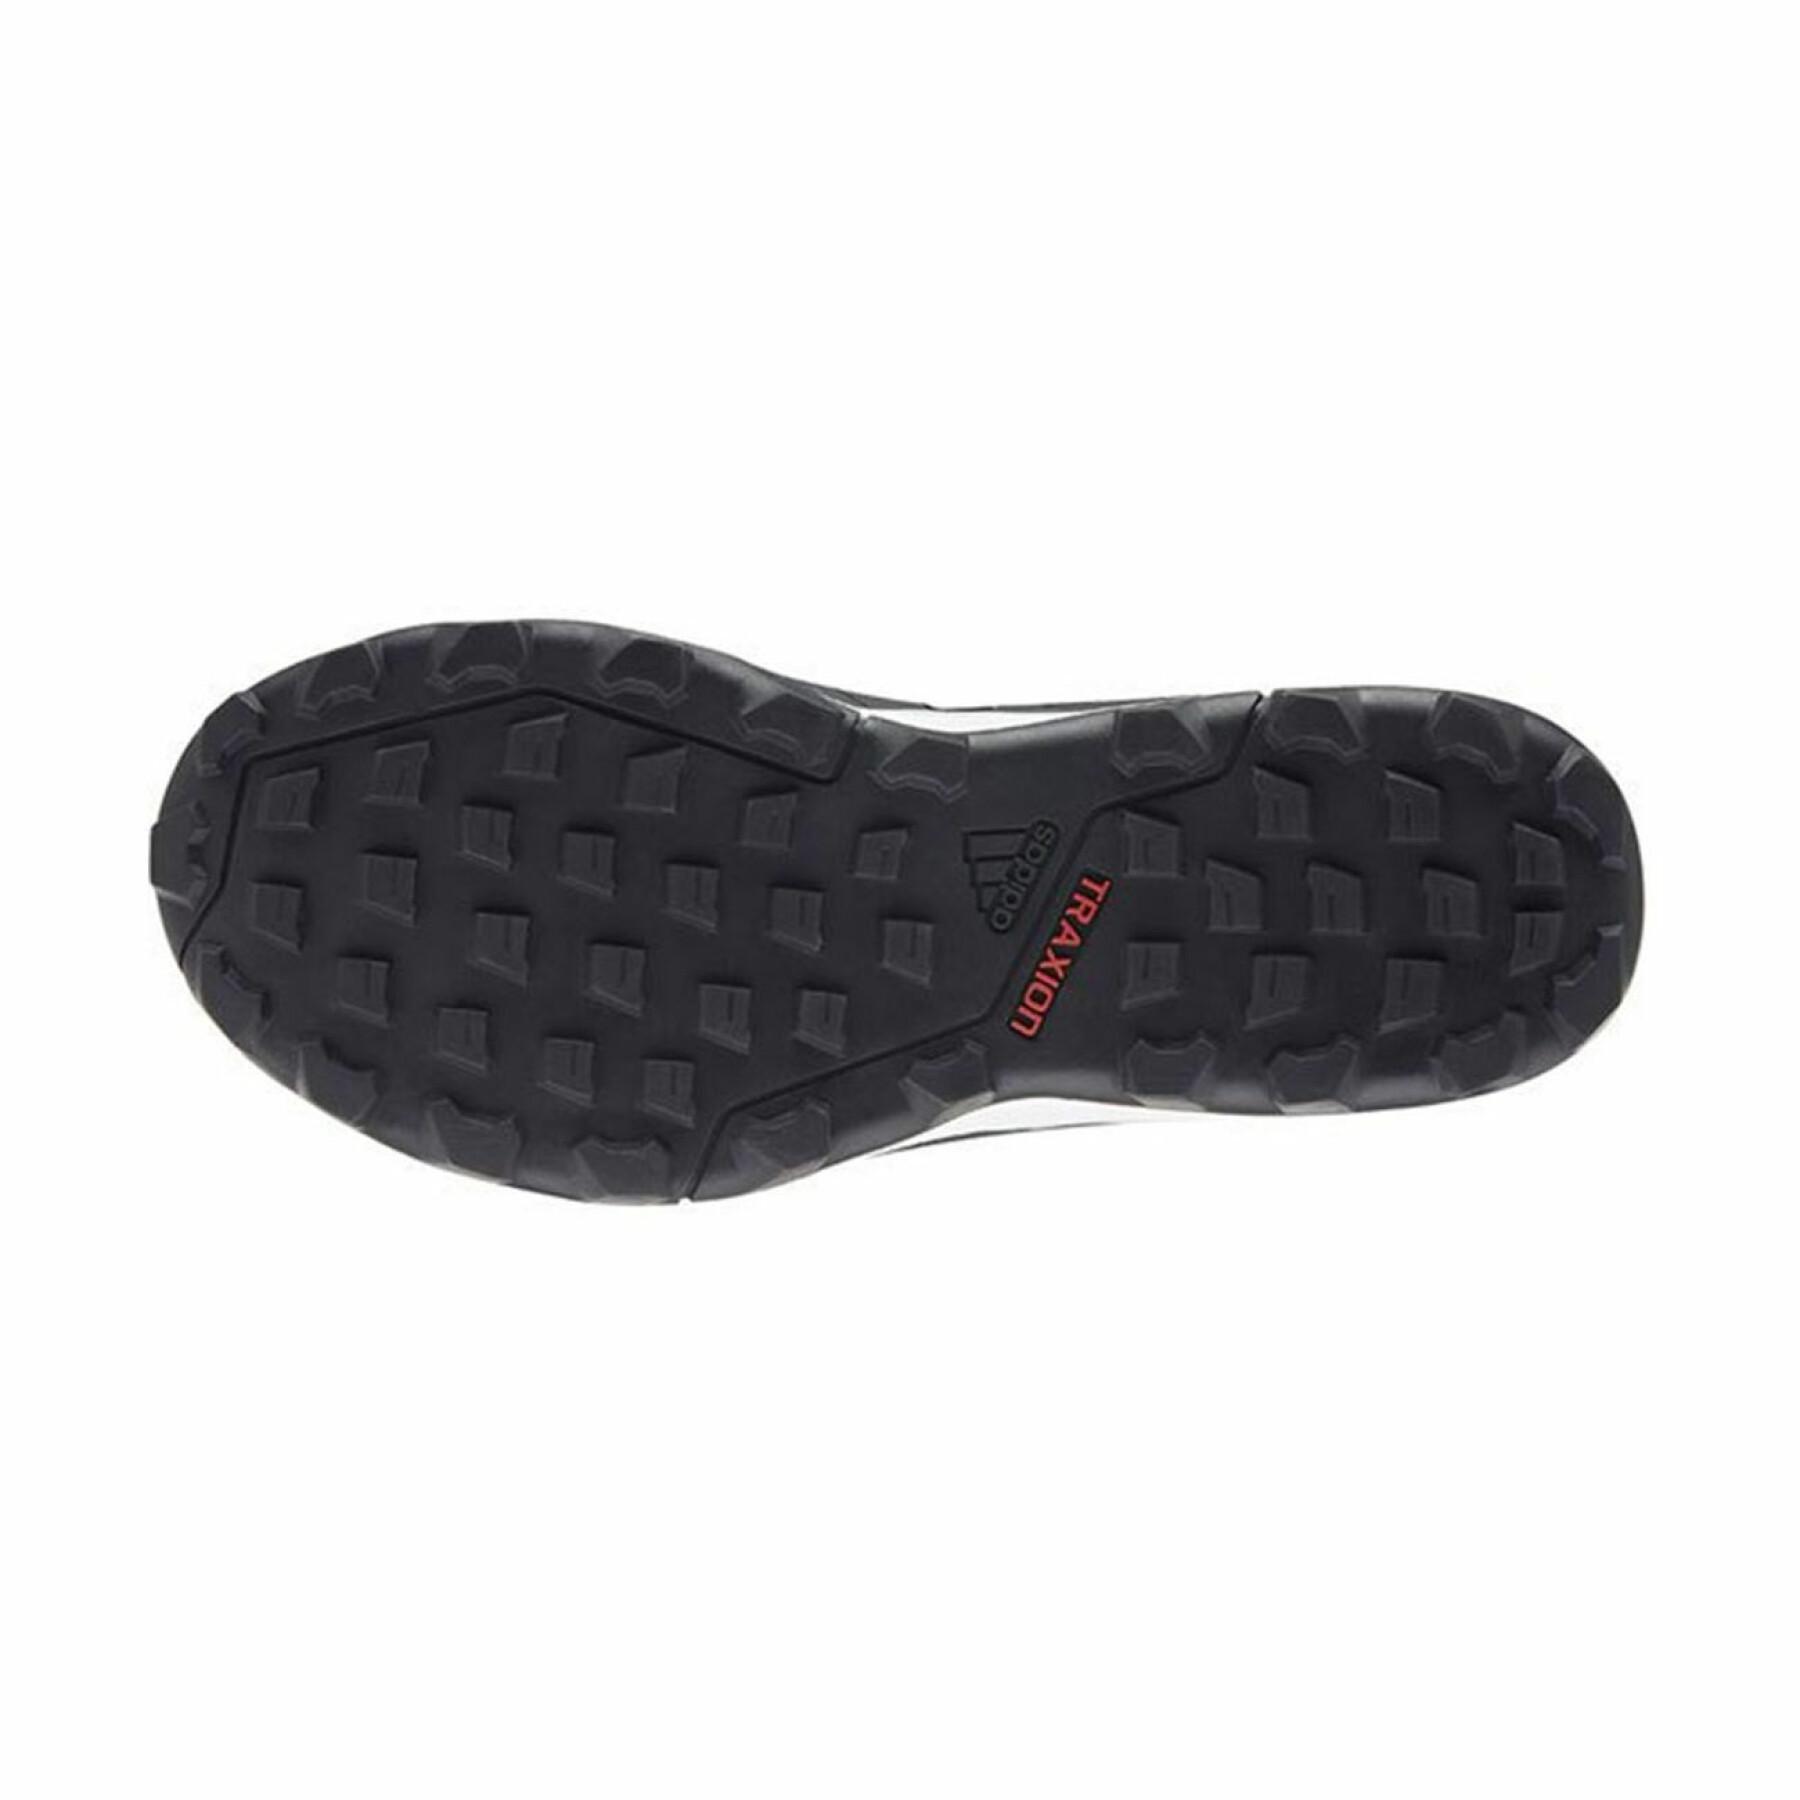 Trail-Schuhe adidas Terrex Agravic GORE-TEX